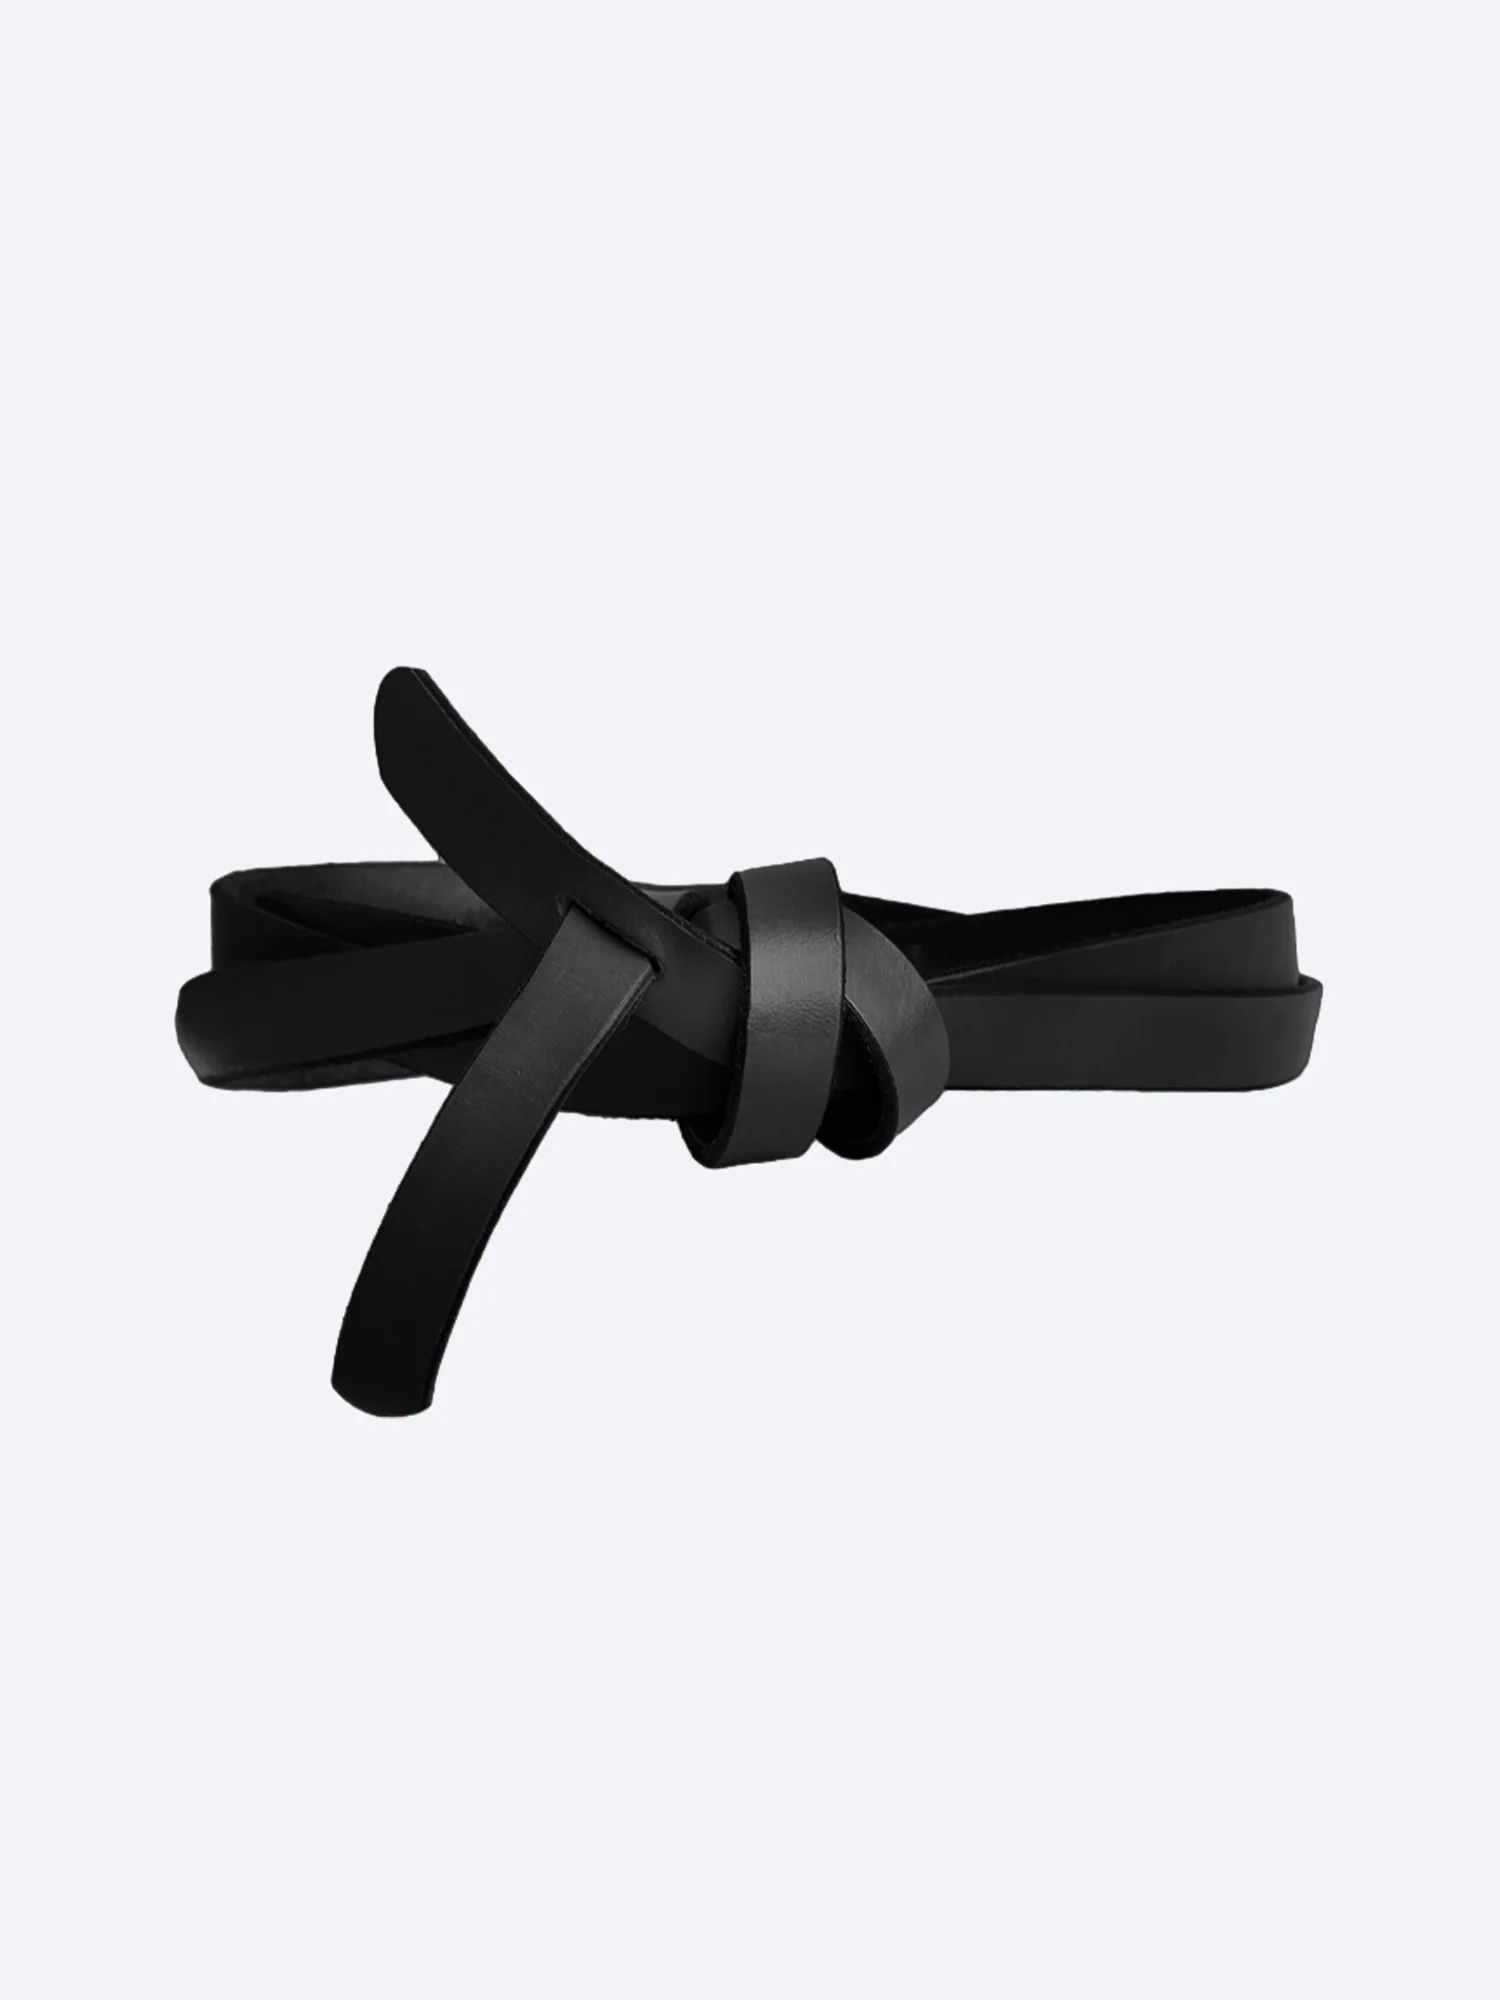 Brochu Walker | Women's Leather Bridle Wrap Belt in Black | Brochu Walker